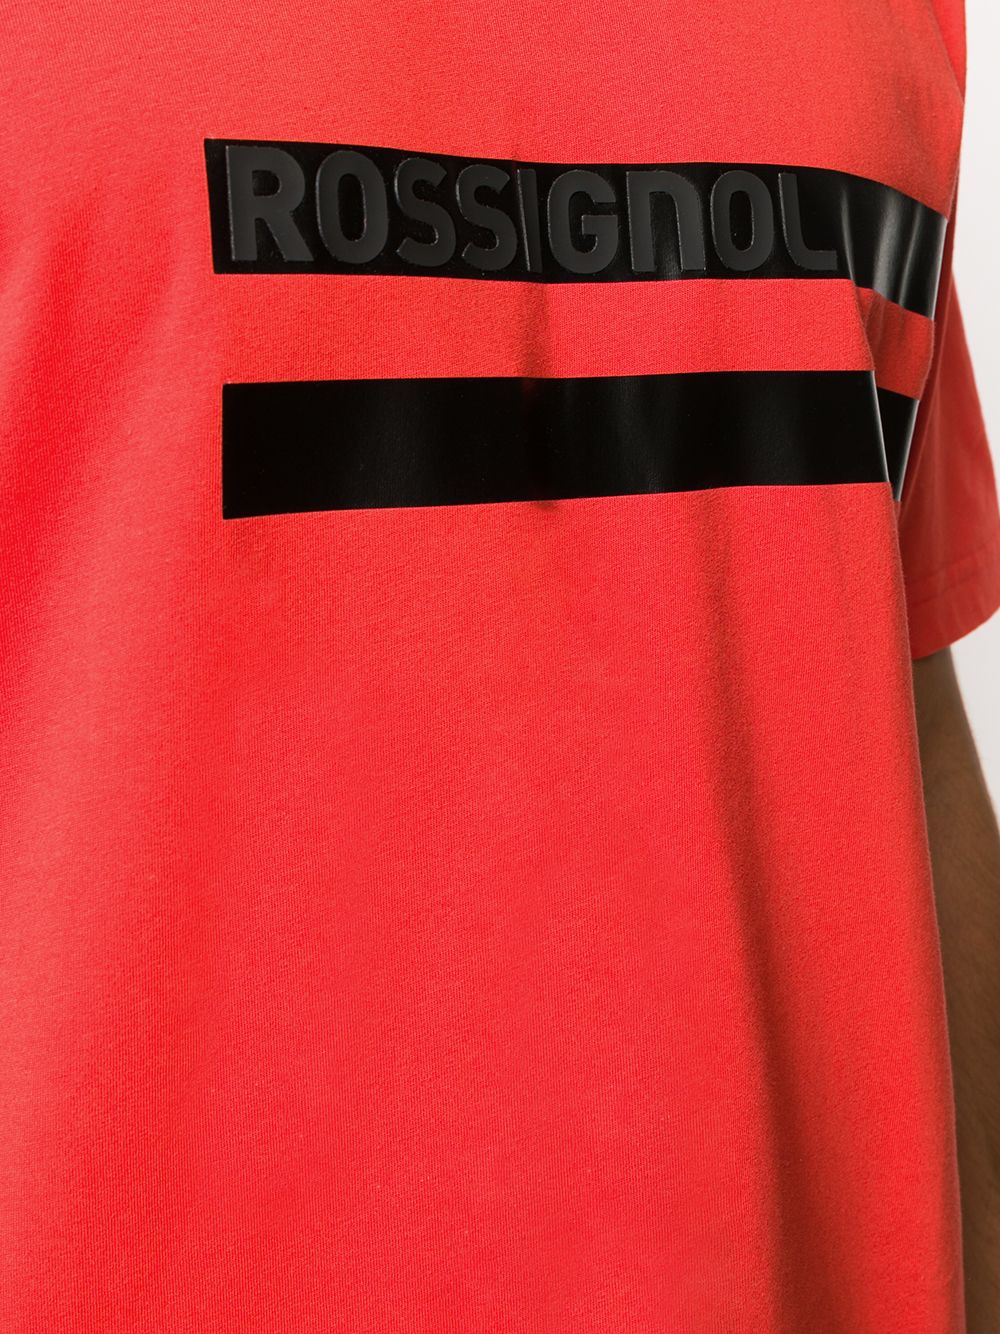 фото Rossignol футболка с контрастными полосками и логотипом